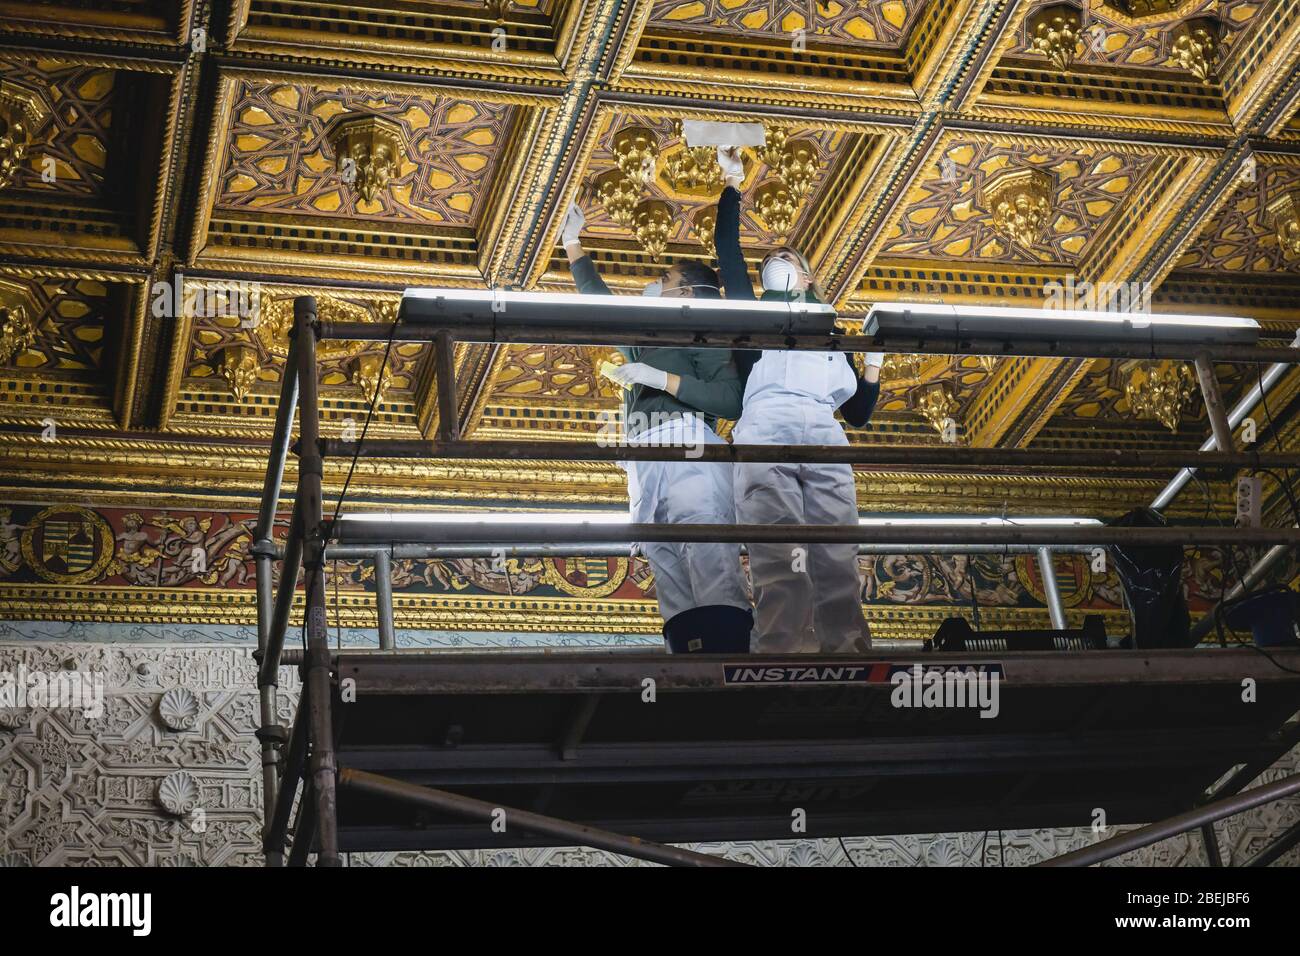 Restauratori al lavoro su soffitto nella Casa de Pilatos, o Casa di Pilate, Siviglia, provincia di Siviglia, Andalusia, Spagna meridionale. Foto Stock